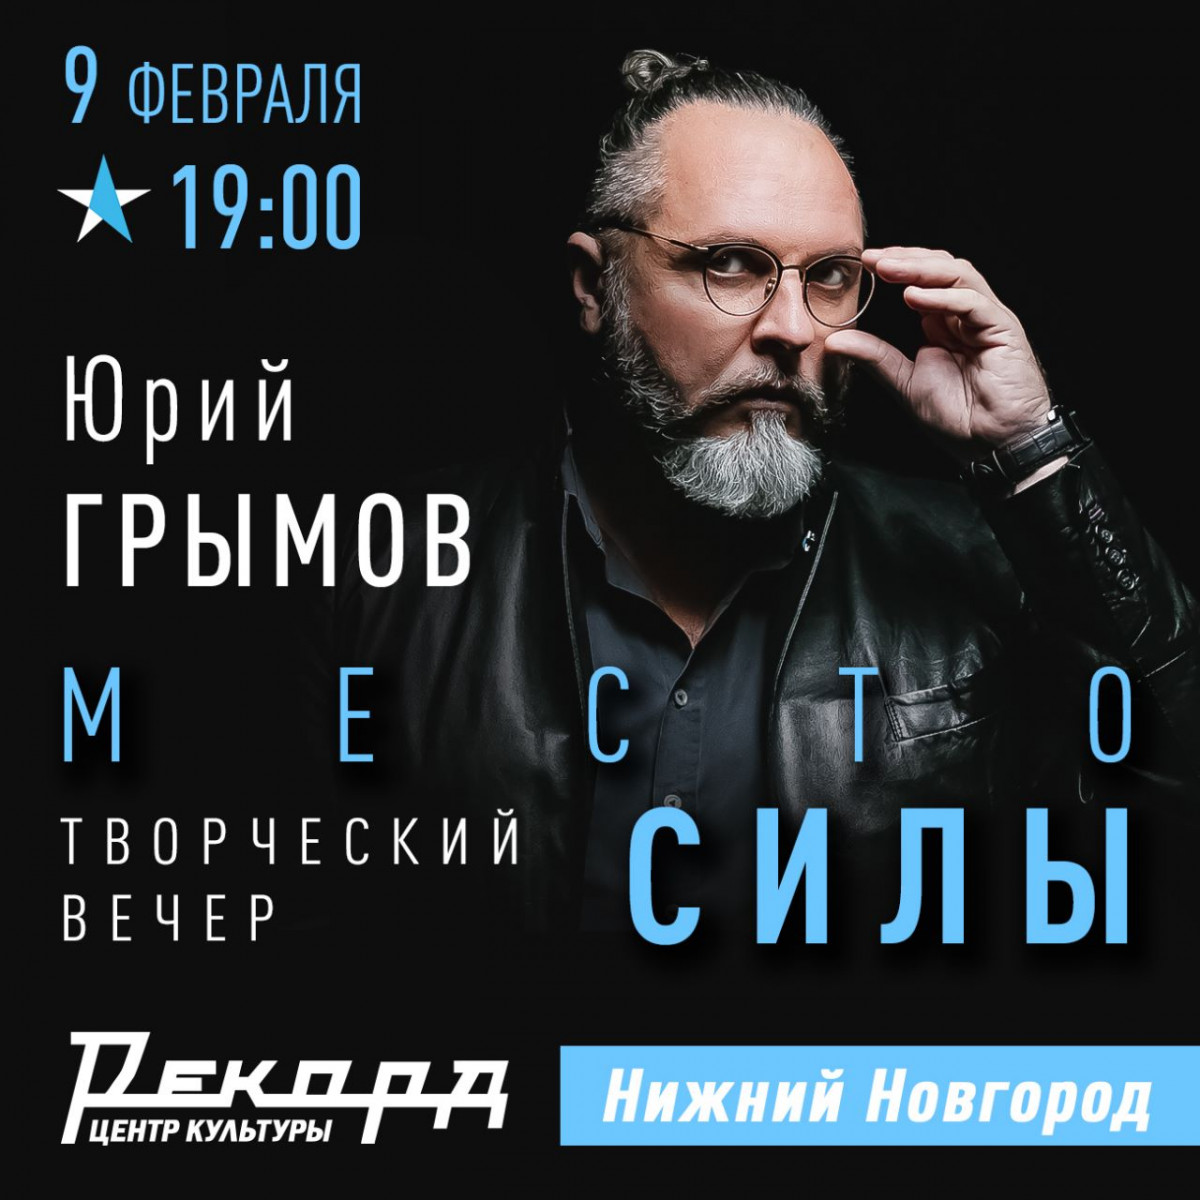 Творческий вечер режиссера Юрия Грымова пройдёт в «Рекорде»